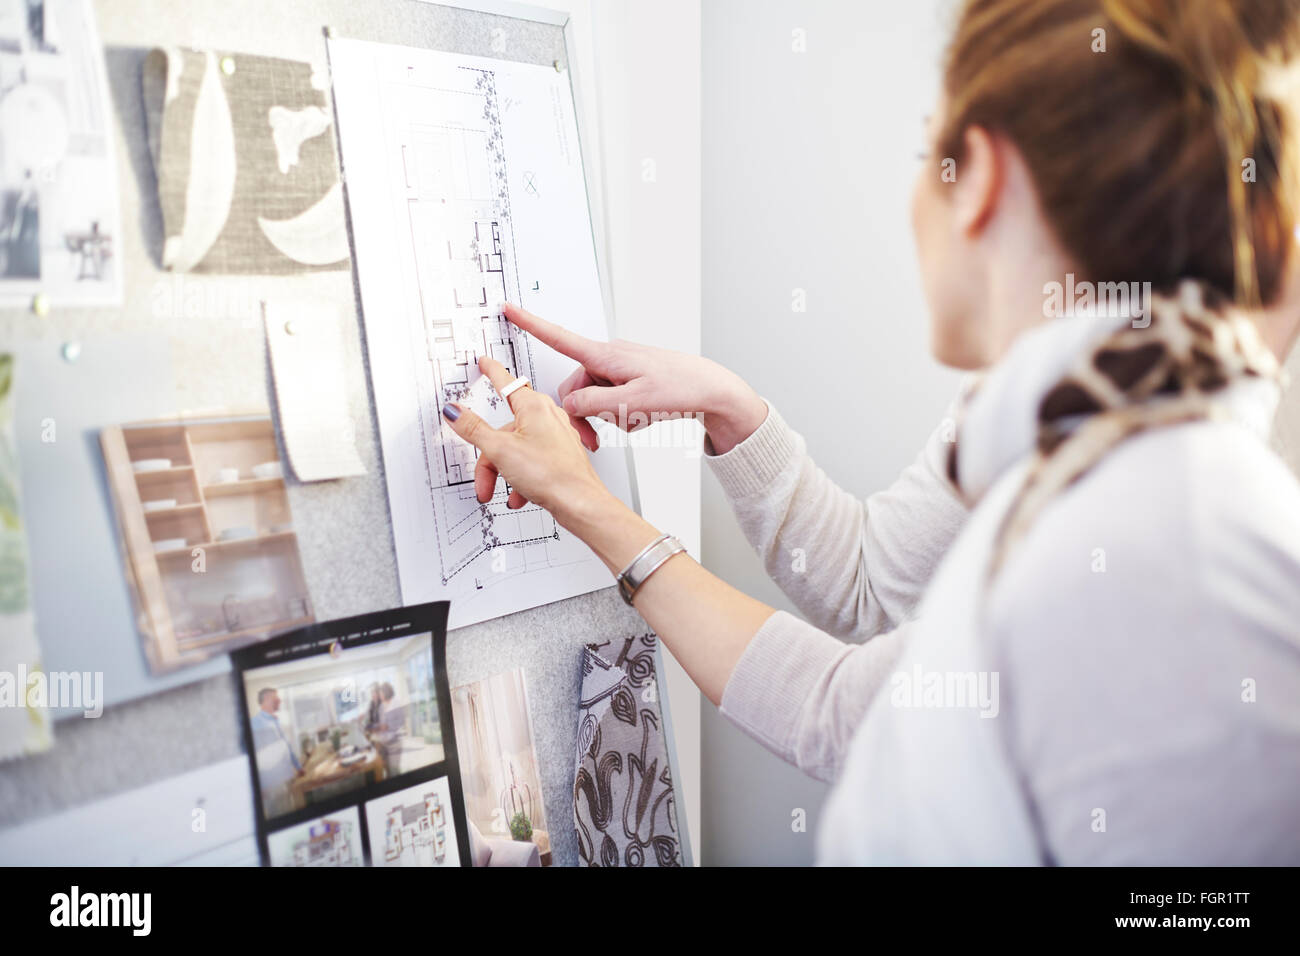 Les designers d'intérieur discussing blueprints hanging in office Banque D'Images